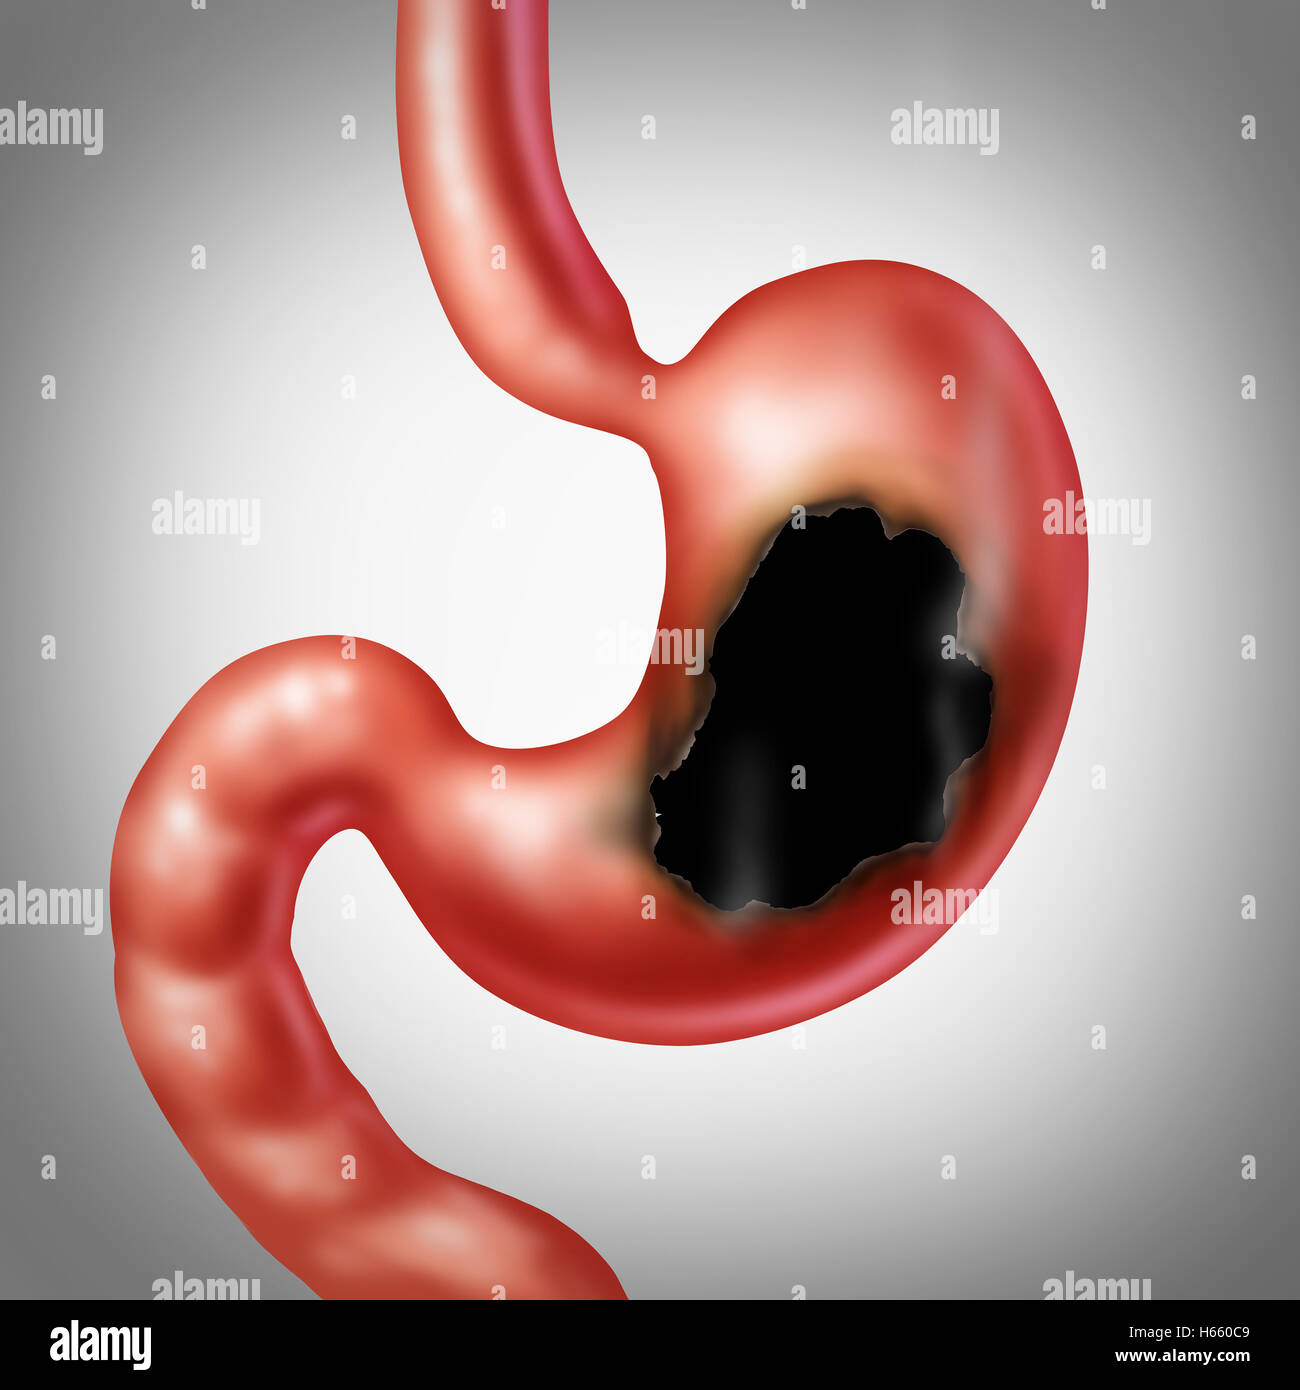 Ulcère de l'estomac et l'indigestion de gravure concept médical de la douleur dans le système digestif avec une illustration médicale de l'organe de l'abdomen avec un trou et une brûlure avec de la fumée comme un symbole de la santé dans un style 3D illustration. Banque D'Images